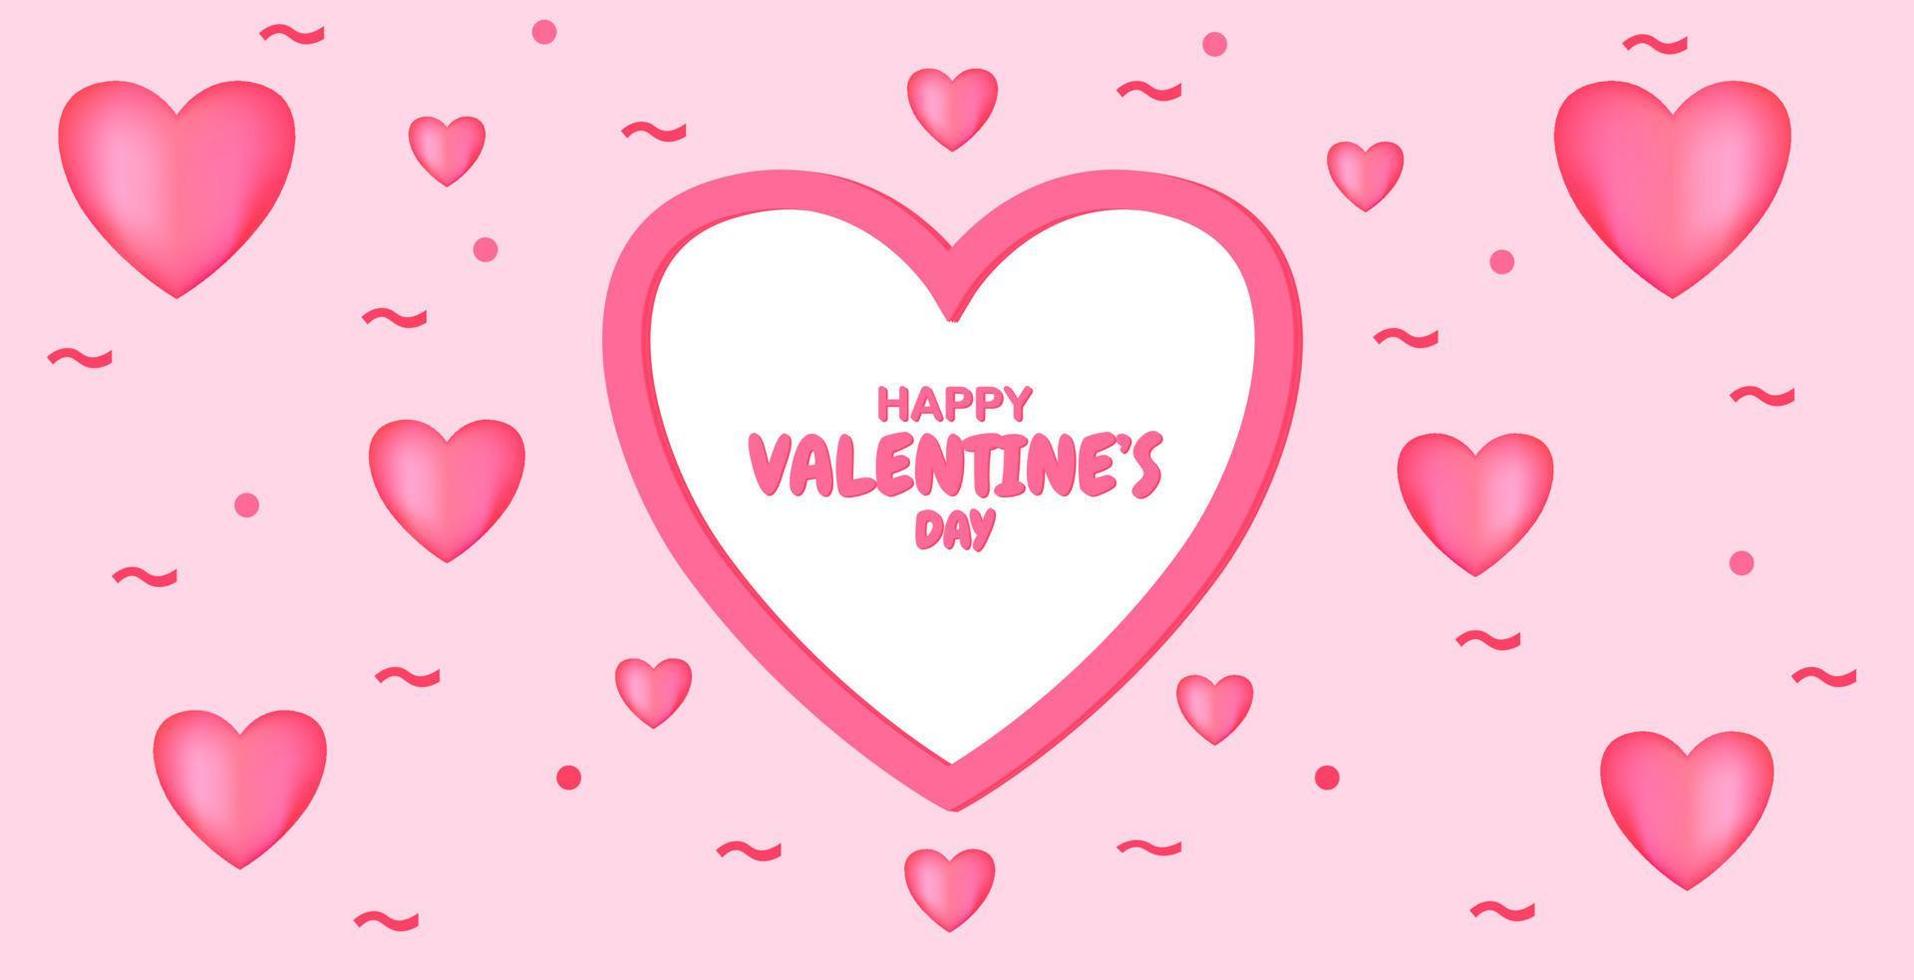 rosa alla hjärtans dag hälsning banner design. 3d hjärta design i rosa färg. mönster för firandet av valentin 2021. vektor